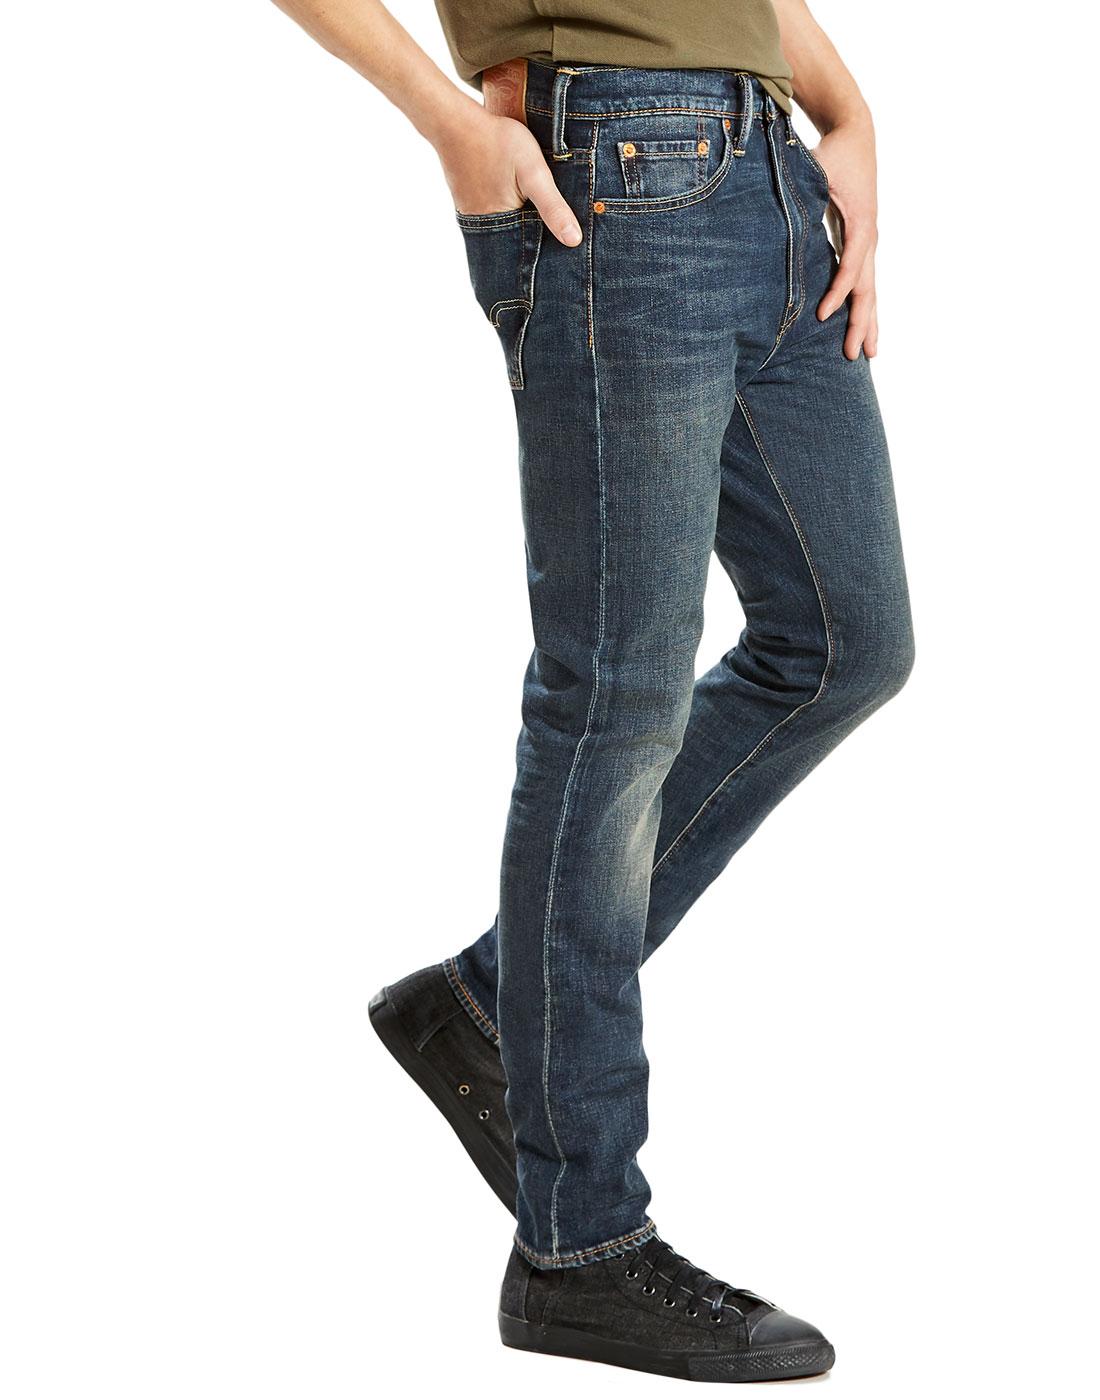 levis 510 jeans